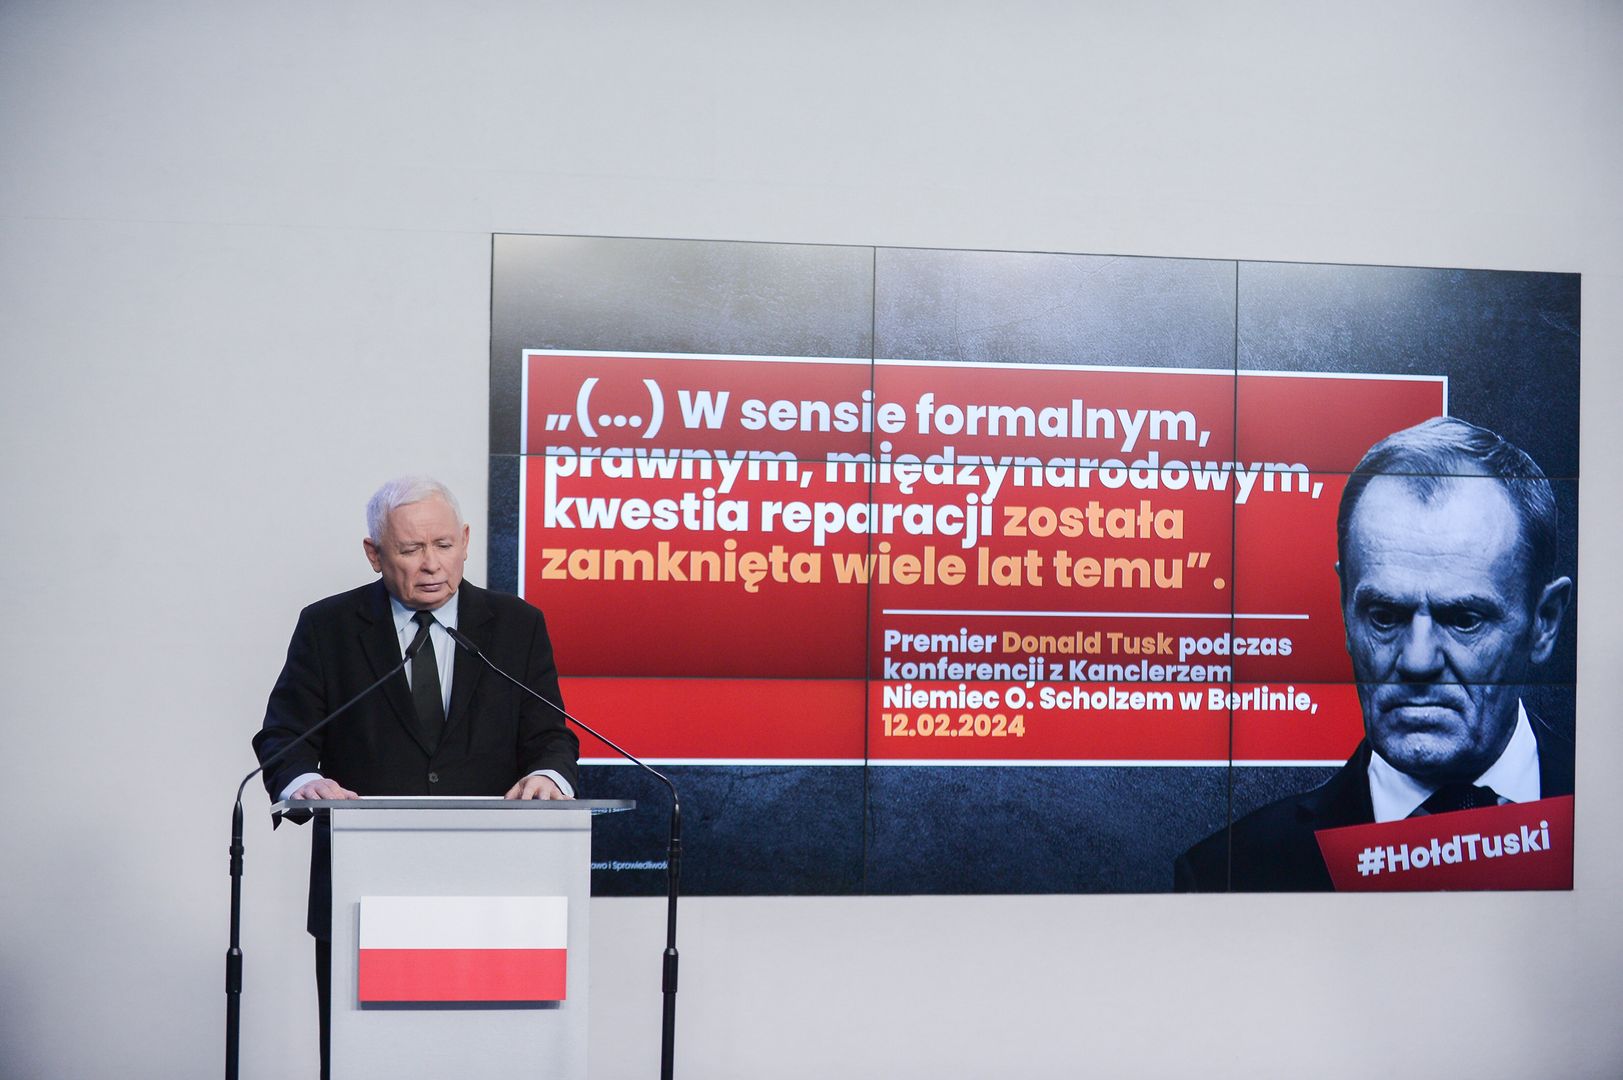 "#HołdTuski". Kaczyński w ogniu krytyki